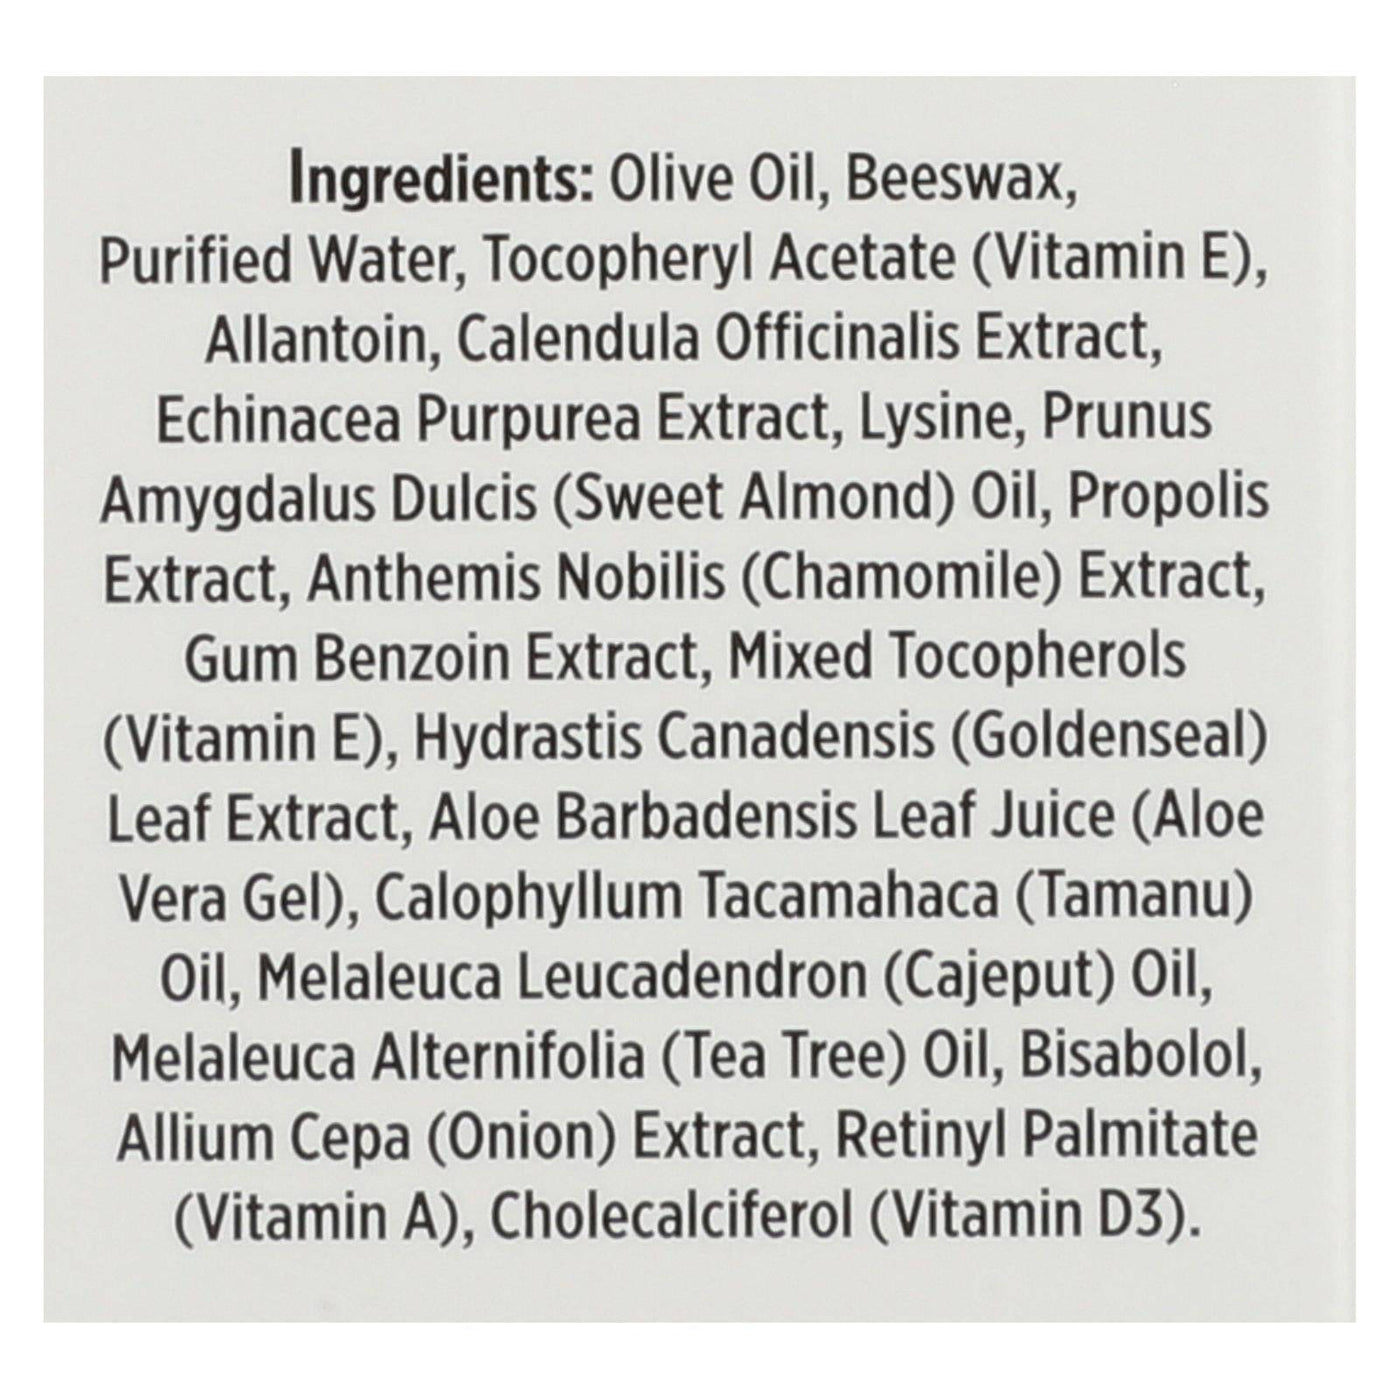 Quantum Scar Reducing Herbal Cream - 0.75 Oz | OnlyNaturals.us